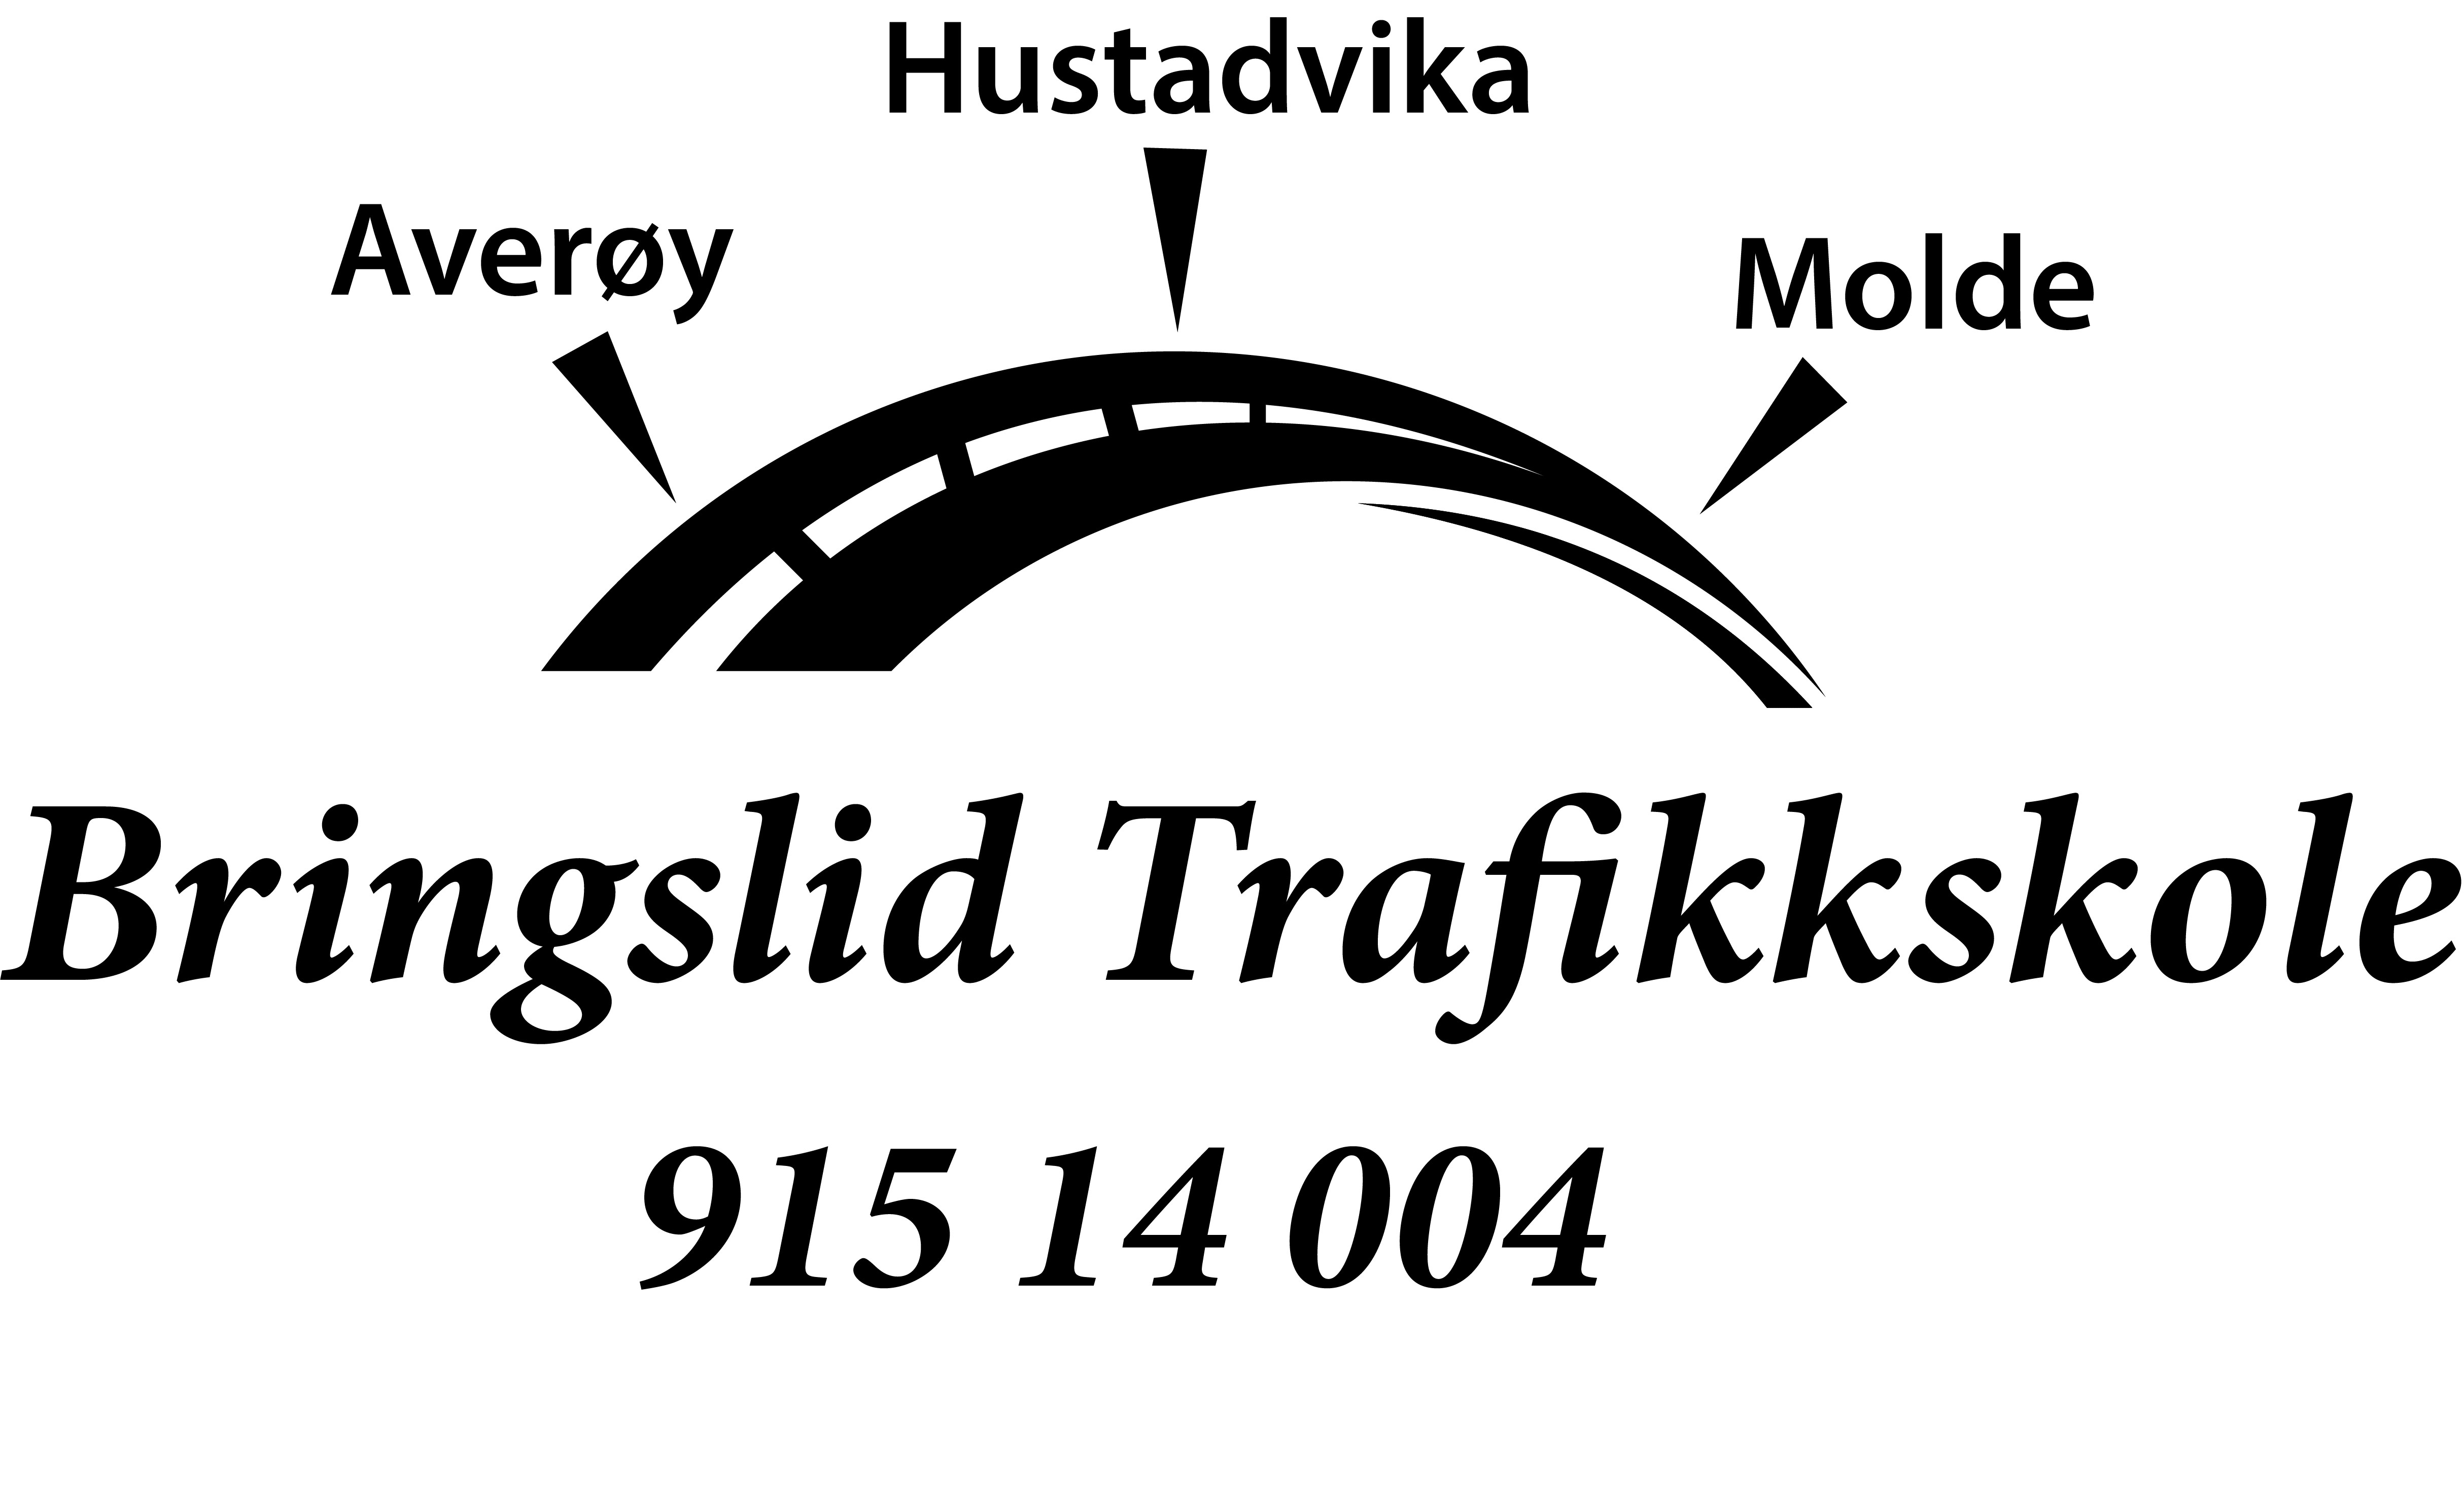 trafikkskole logo